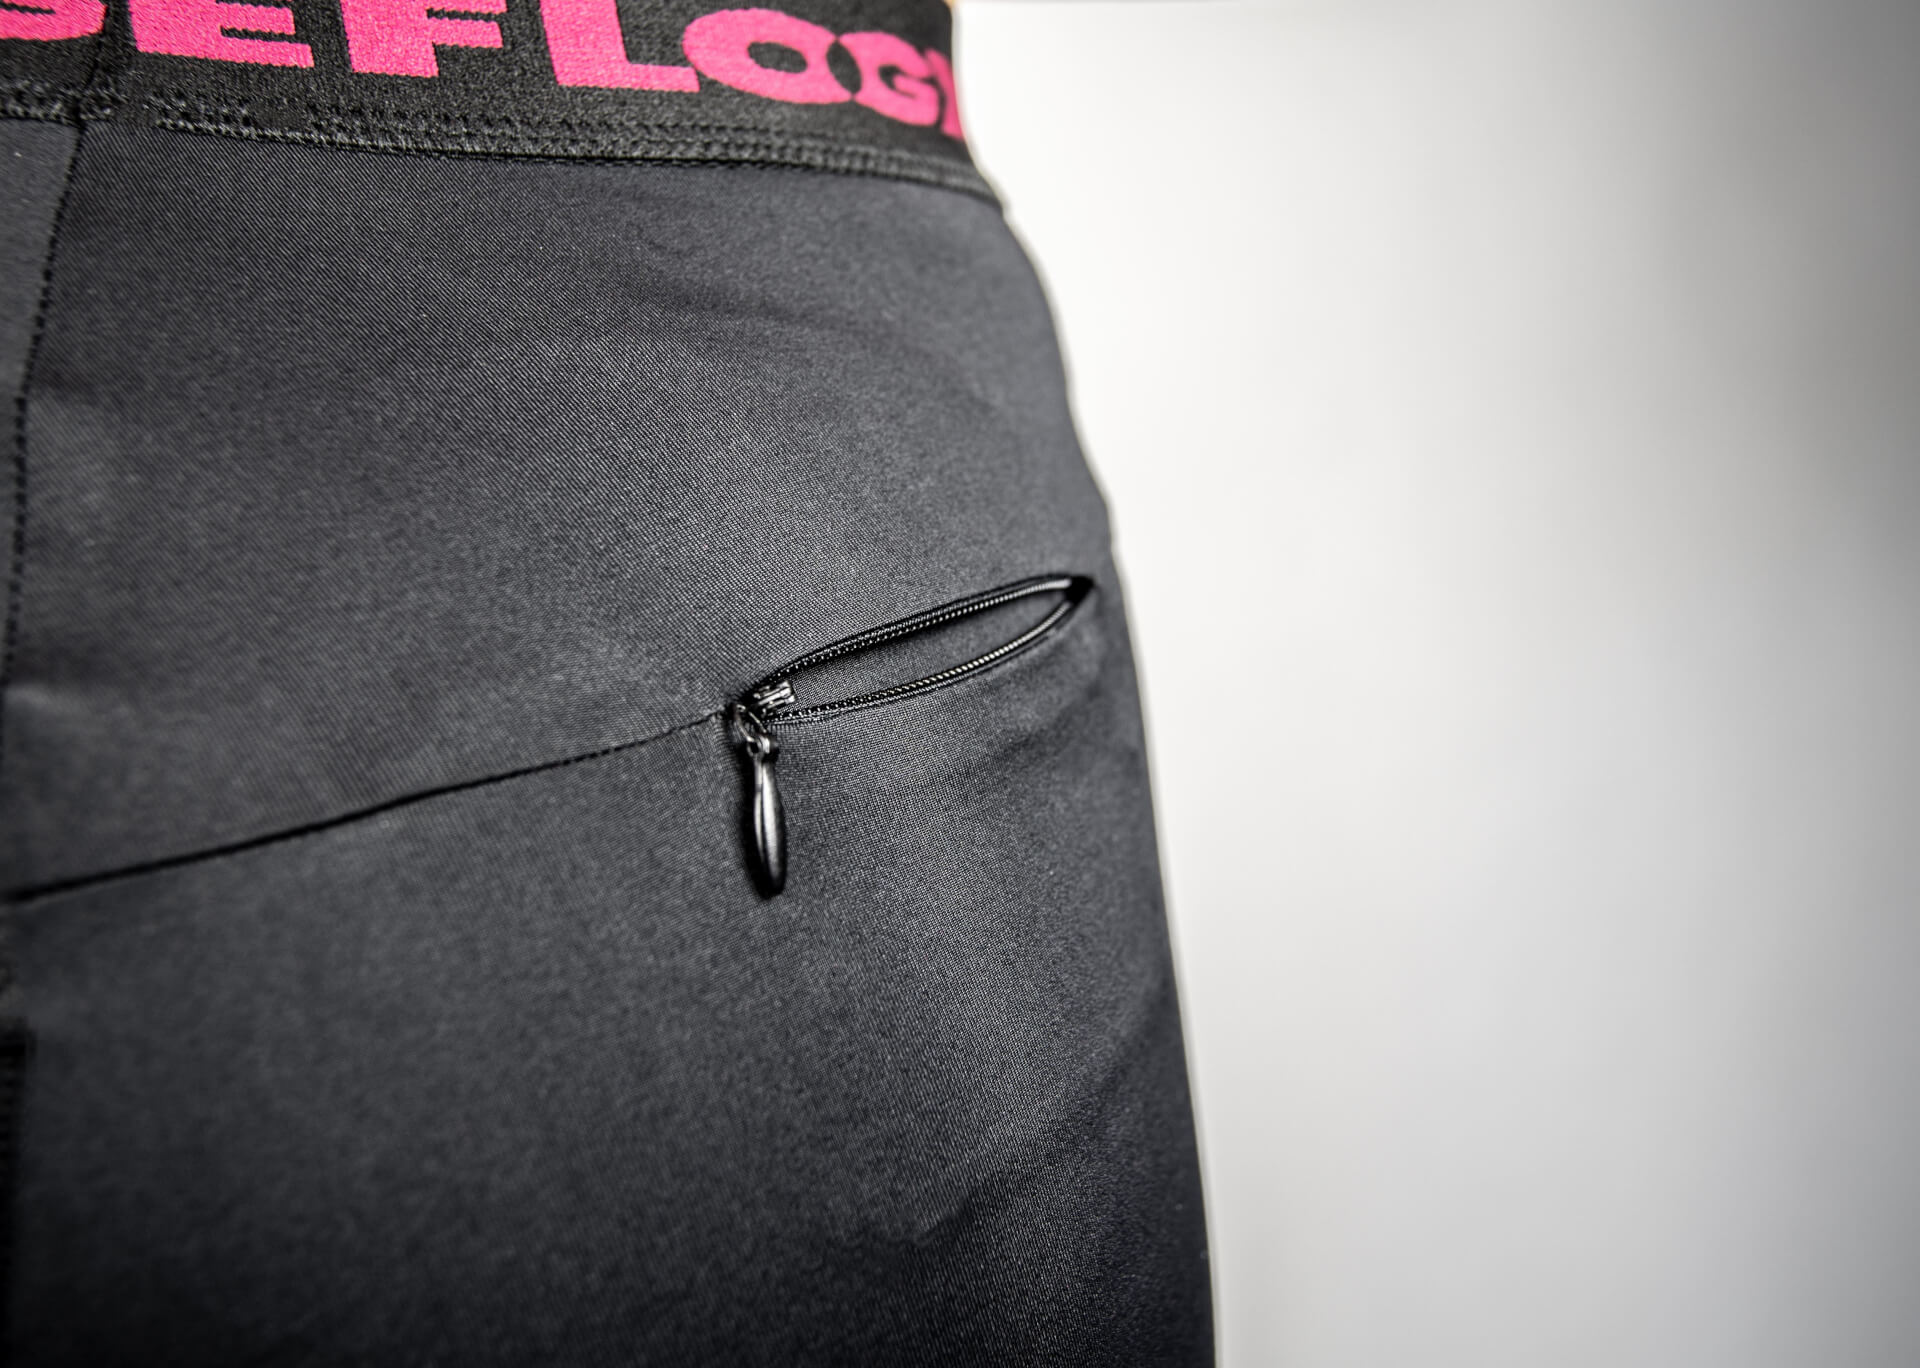 FEFLOGX Sportswear Damen Leggings Motion, kleine Reißverschluss-Tasche Detail-Foto, Fotoalbum.